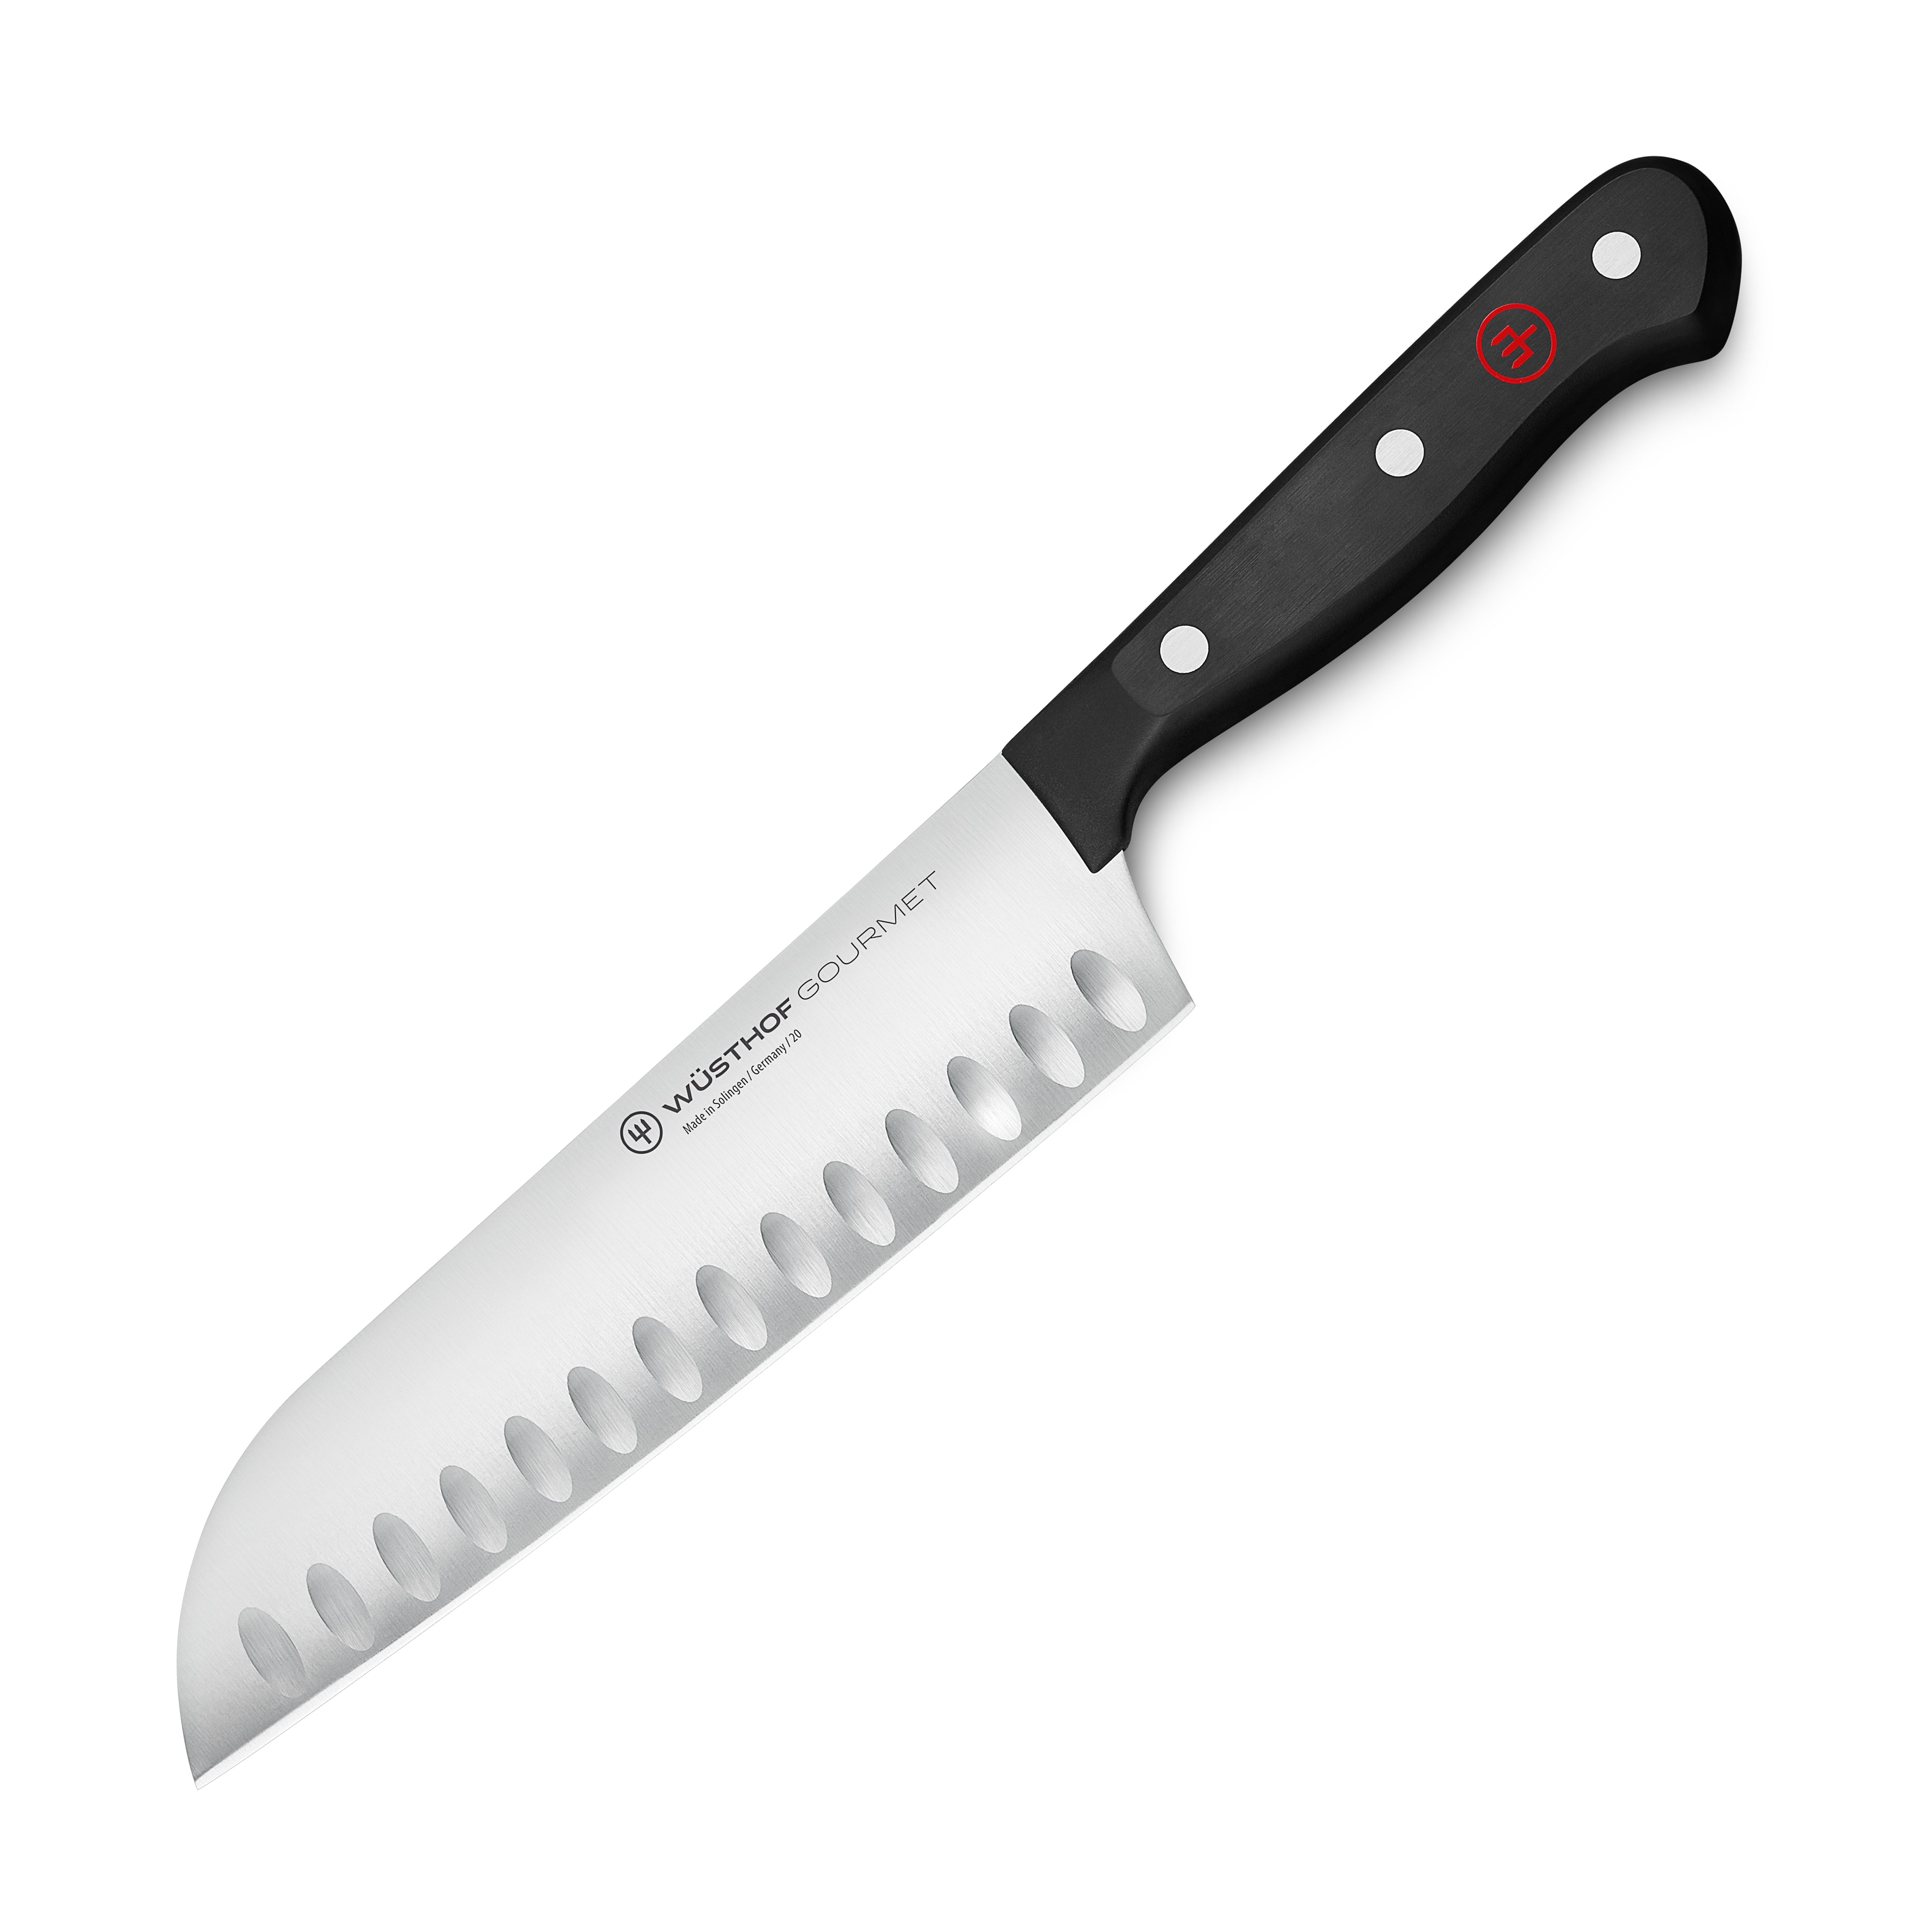 Shun Universal Saya Blade Sheath for 7 Santoku & 8 Chef's Knives